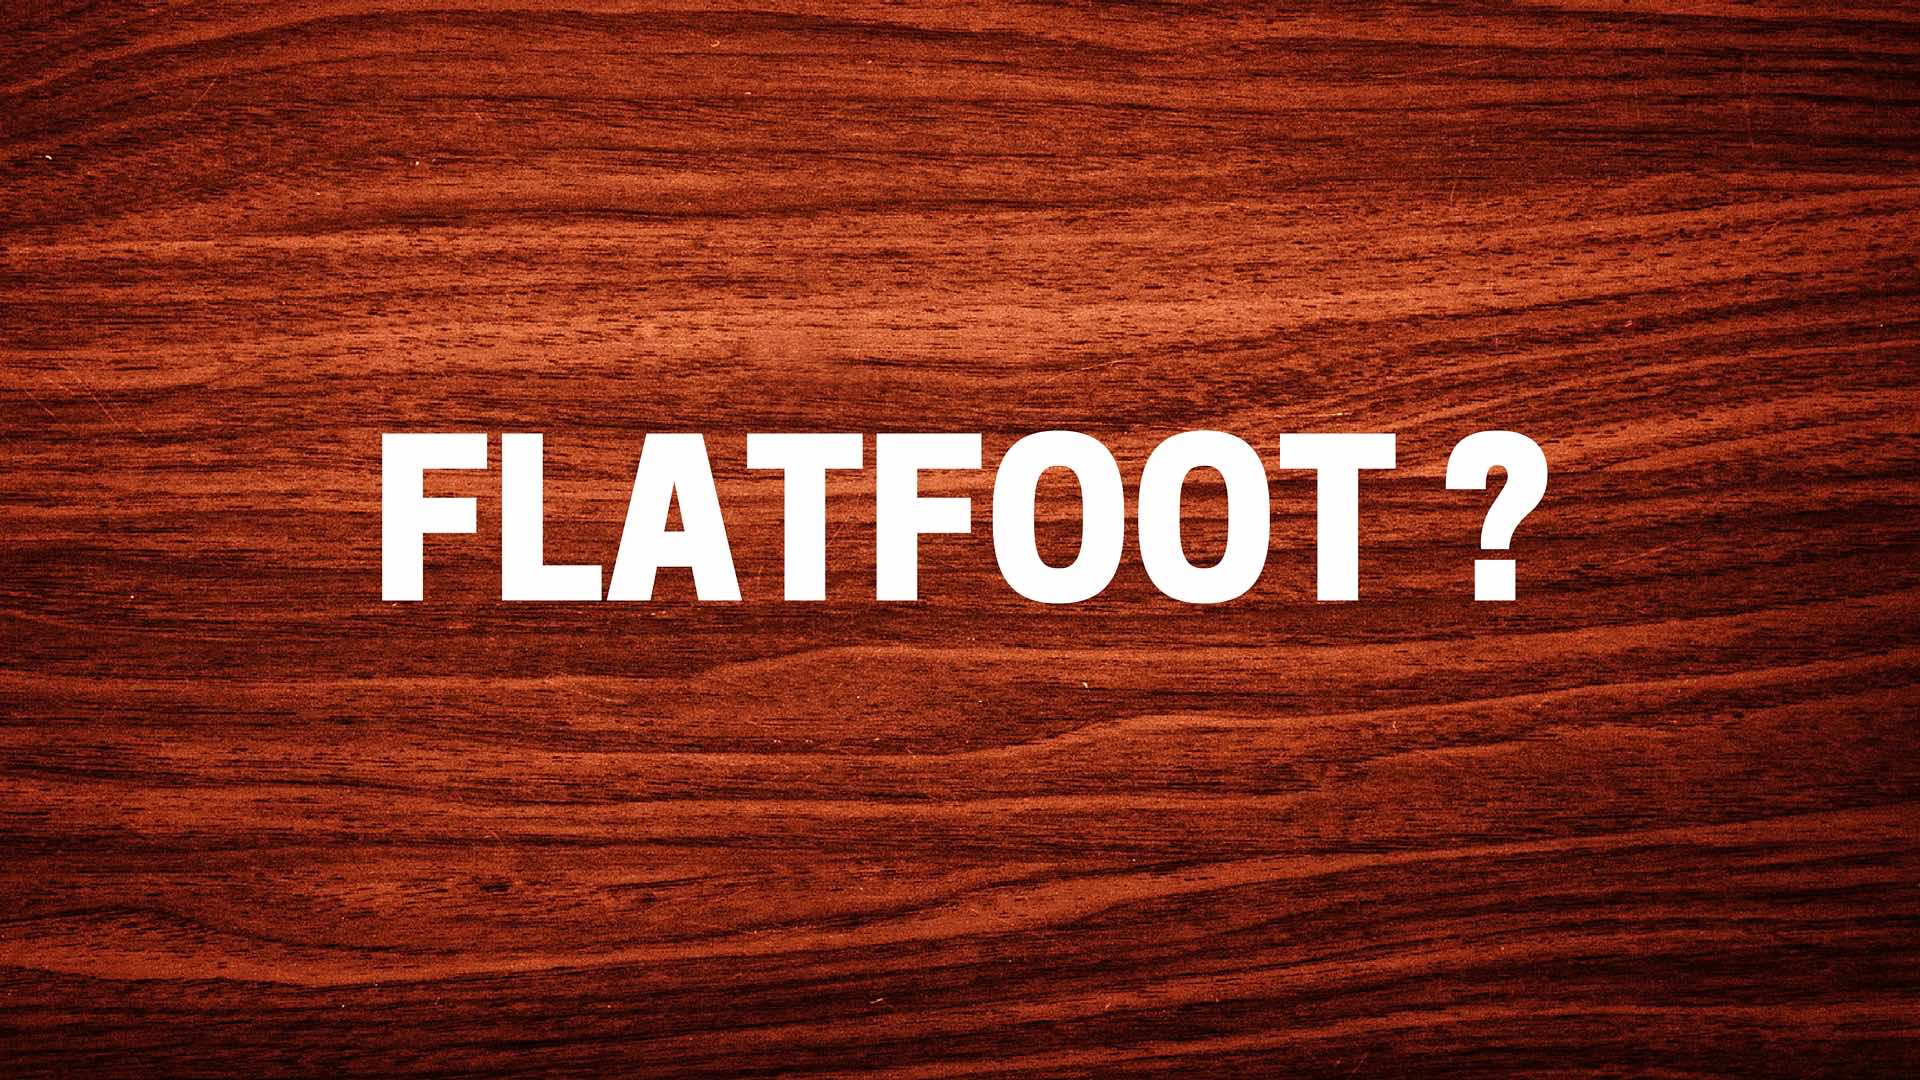 Le flatfoot